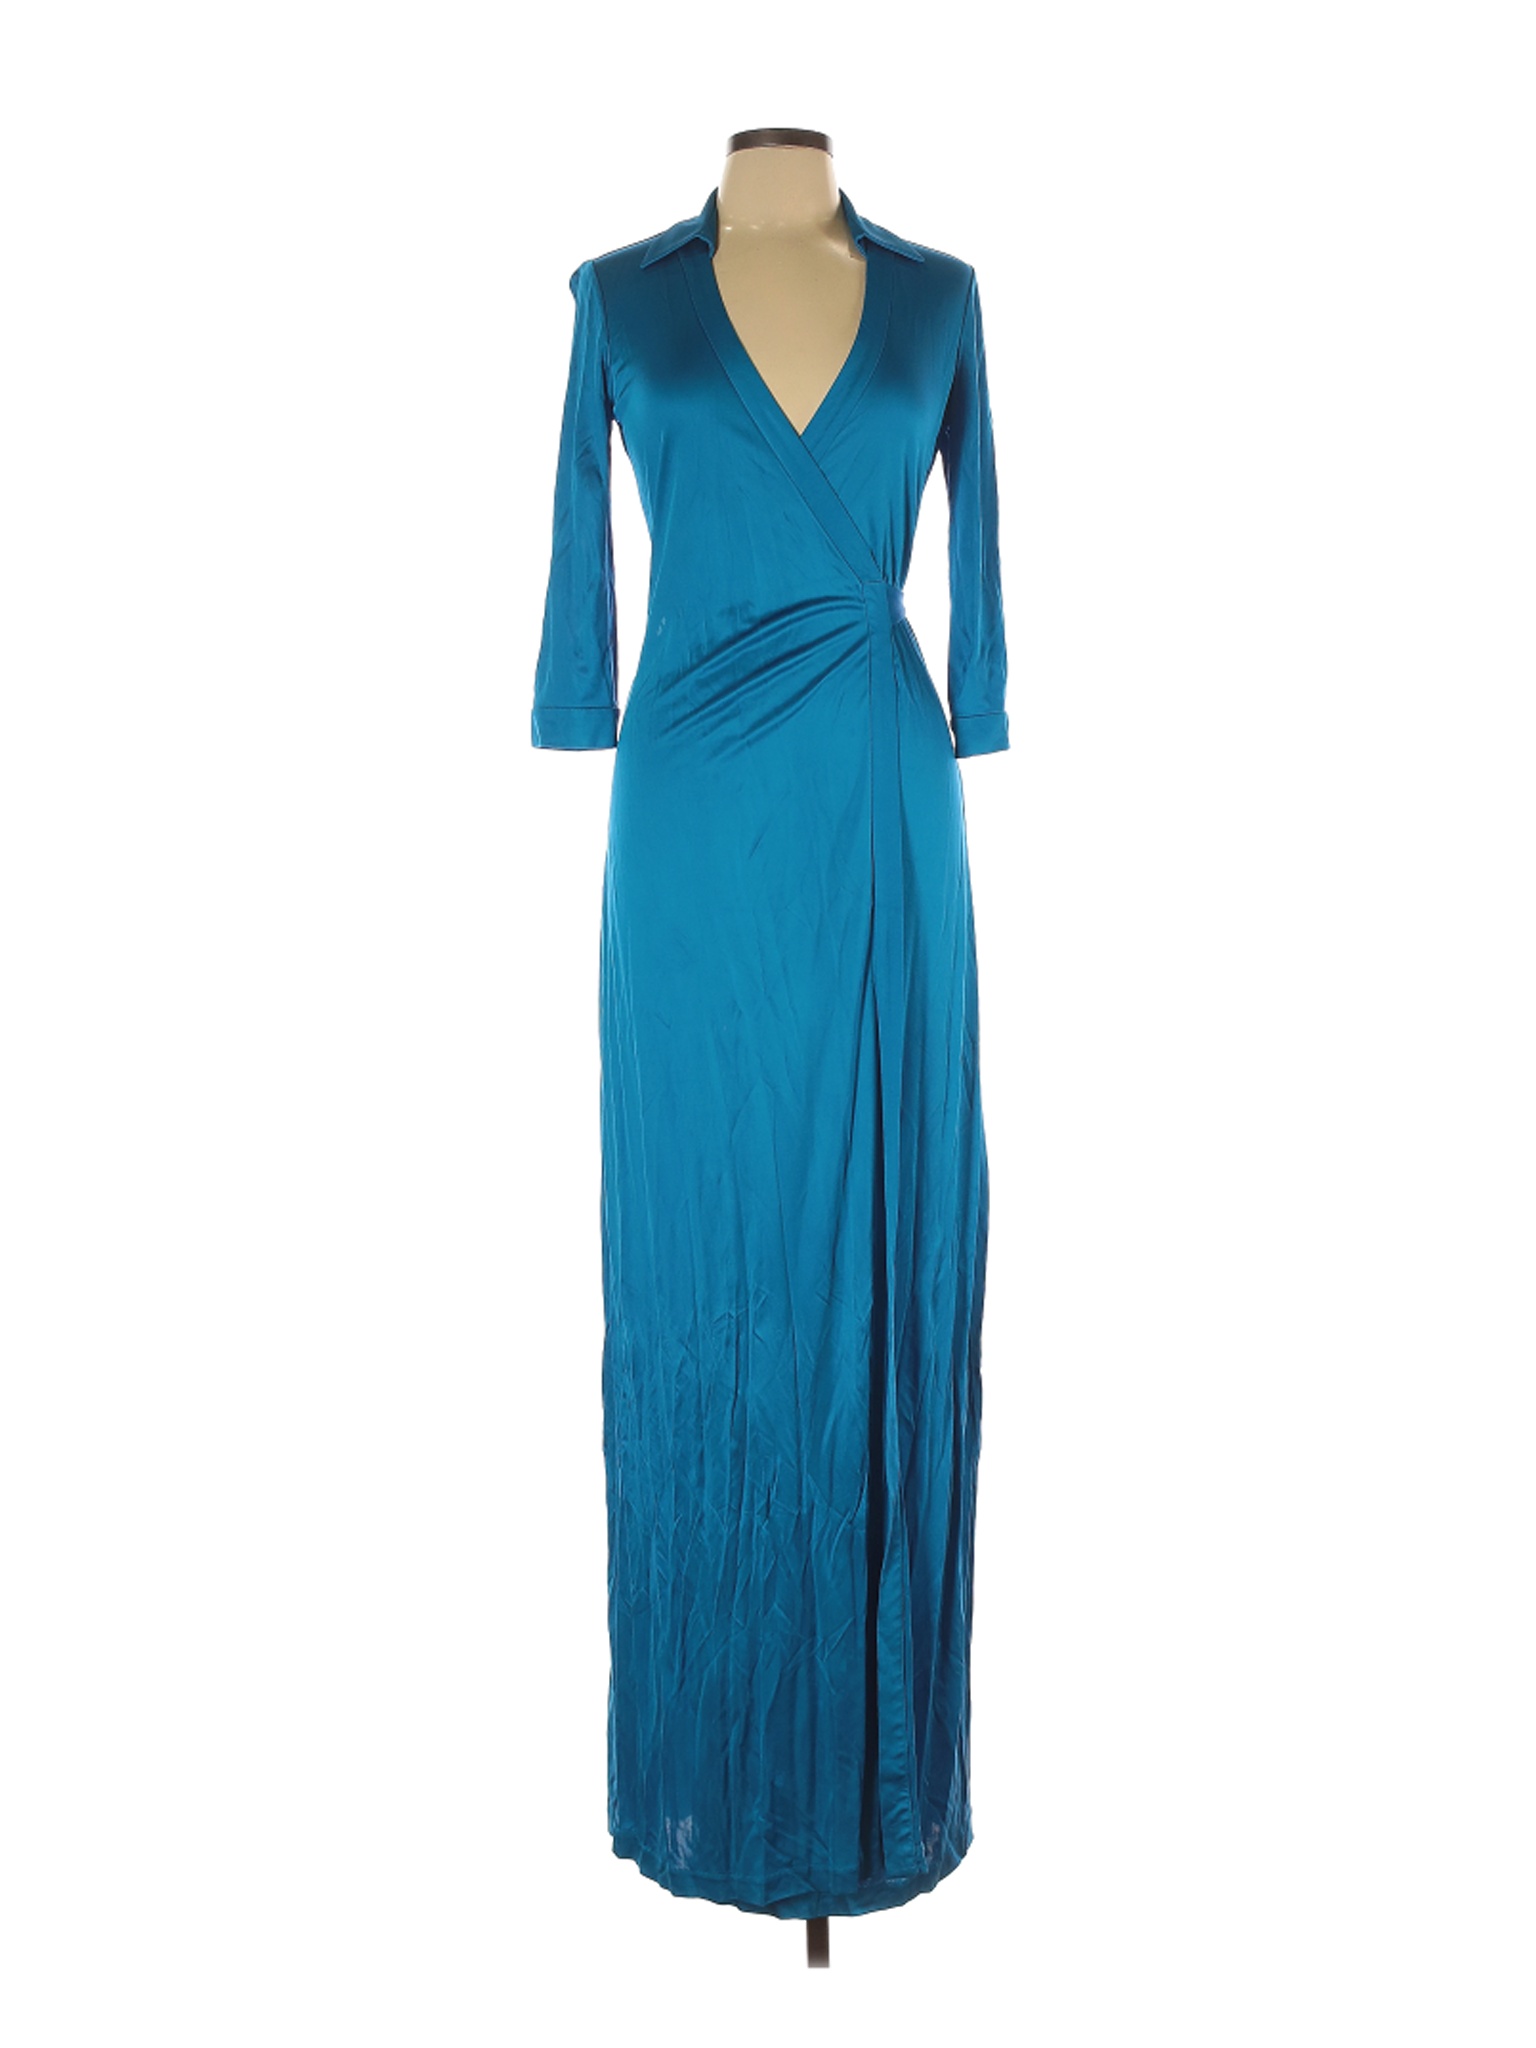 Diane von Furstenberg Women Green Casual Dress 10 | eBay